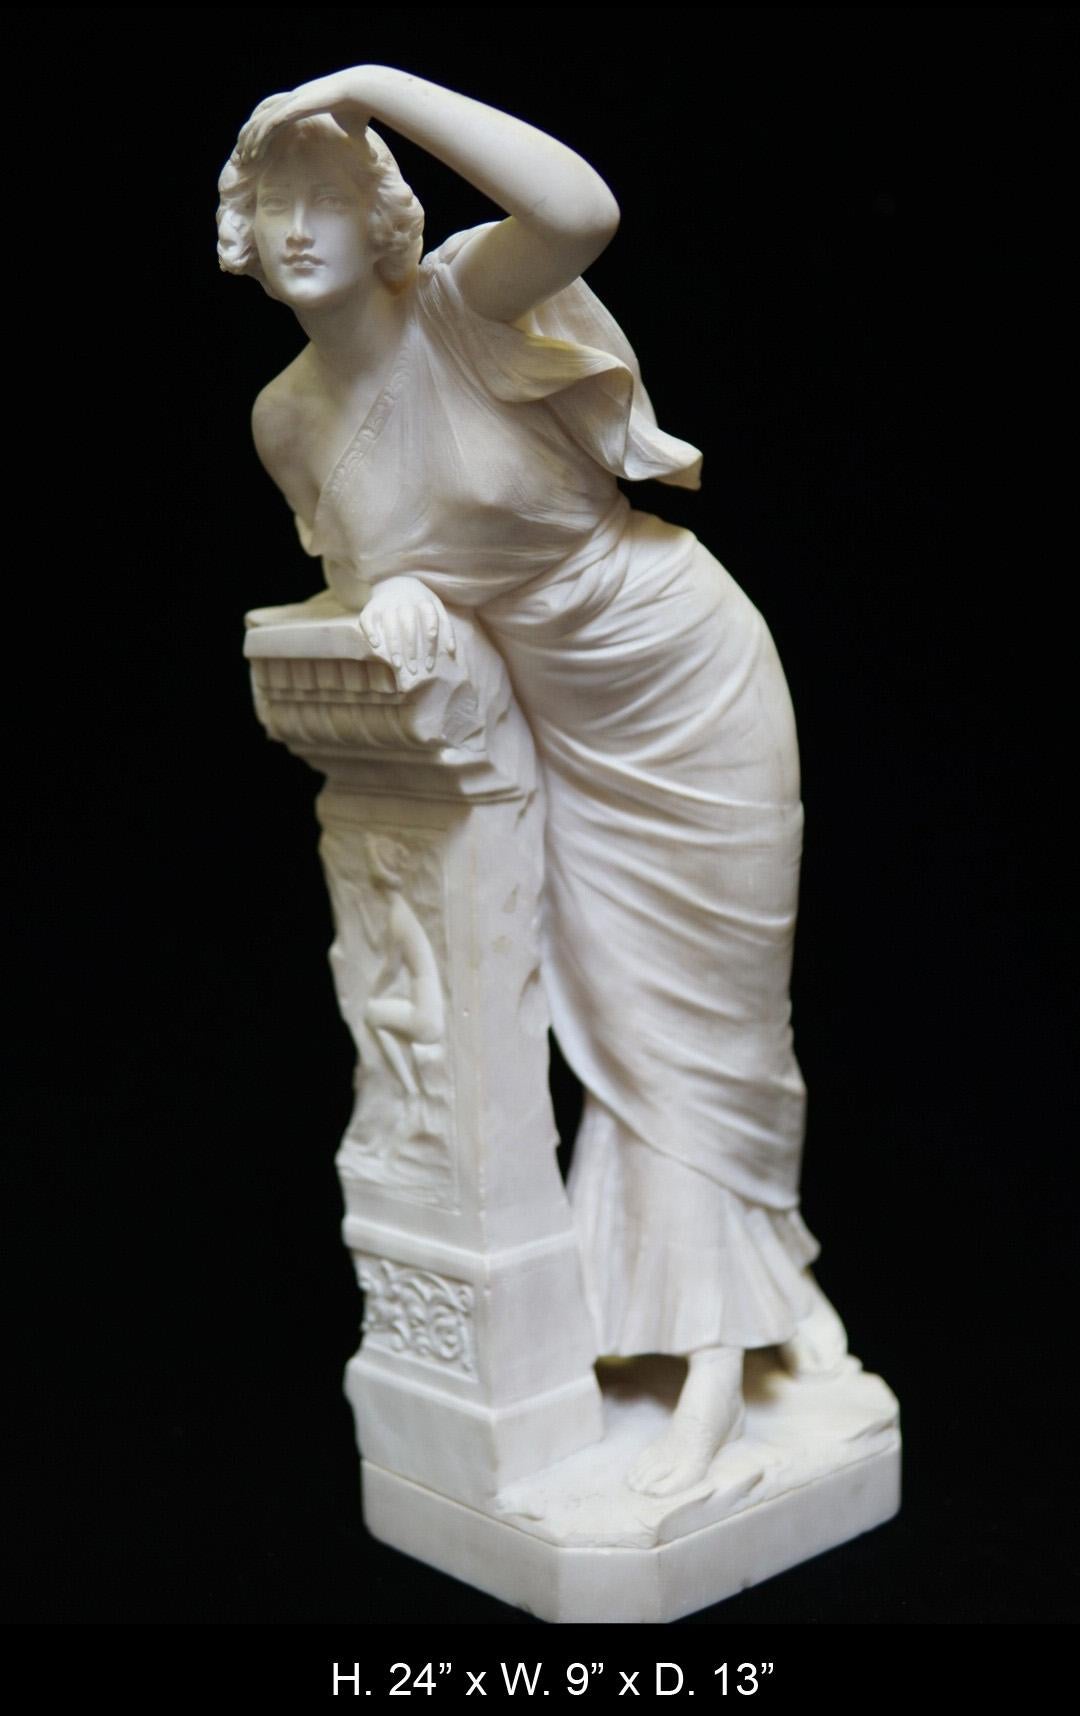 Fine sculpture italienne de style néoclassique en albâtre blanc sculpté à la main, représentant une jeune fille debout habillée de vêtements néoclassiques, appuyée sur un piédestal architectural, représentant un nu assis en relief, le tout reposant